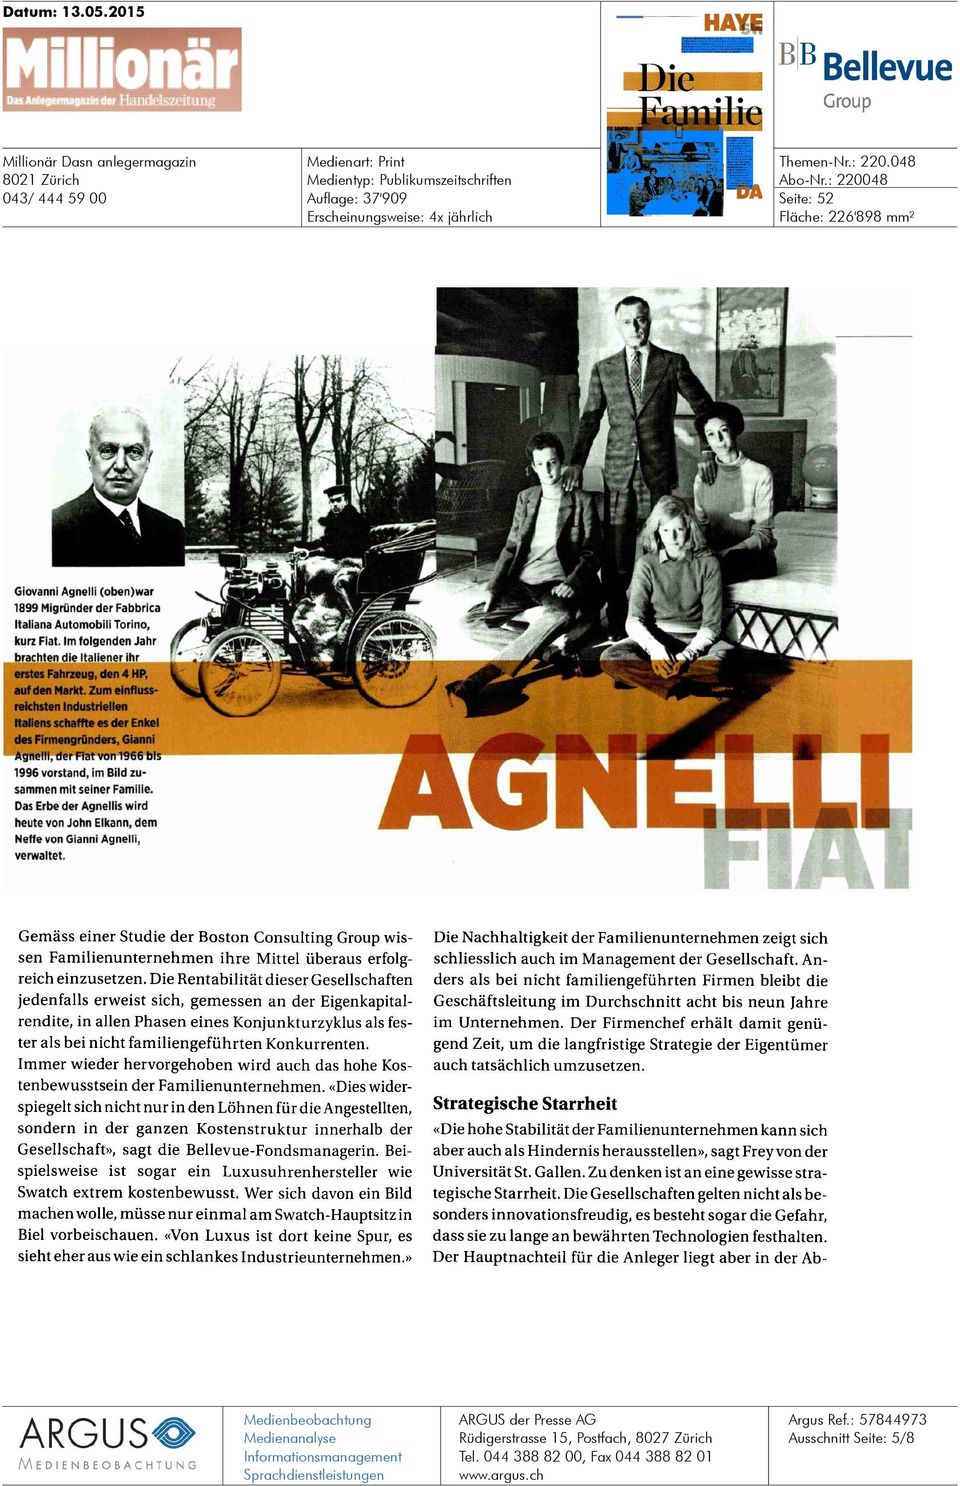 Zum einflussreichsten Industriellen Italiens schaffte es der Enkel des Firmengründers, Gianni Agnelli, der Fiat von 1966 bis 1996 vorstand, im Bild zusammen mit seiner Familie.